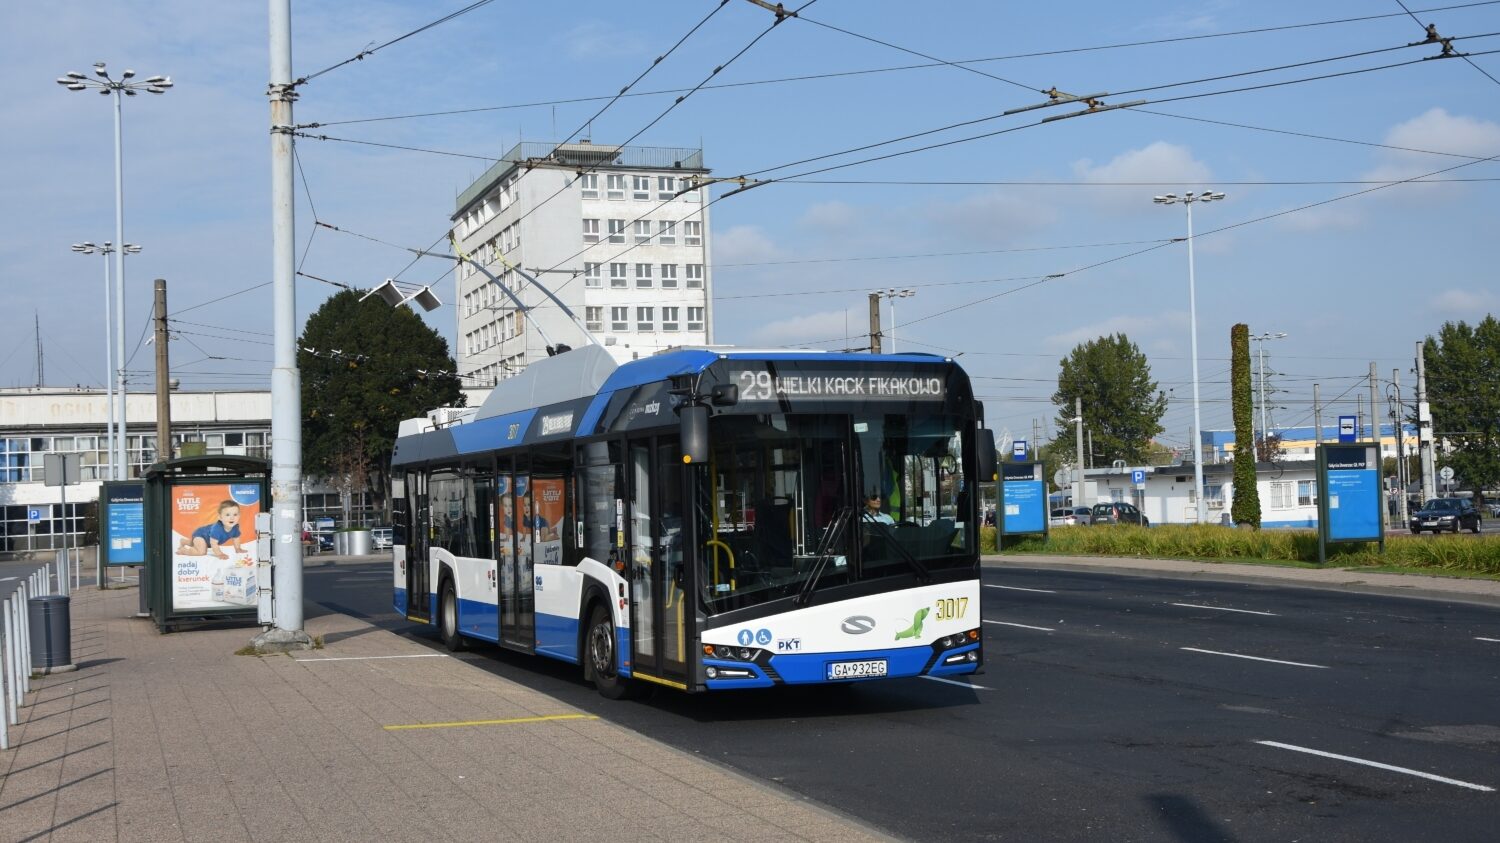 Tradičním dodavatelem trolejbusů do Gdyně je polský Solaris, který vedle klasických trolejbusů dodal do města i tzv. „supertrolejbusy“. Nyní však opět poptává běžné parciální trolejbusy. (foto: Libor Hinčica)